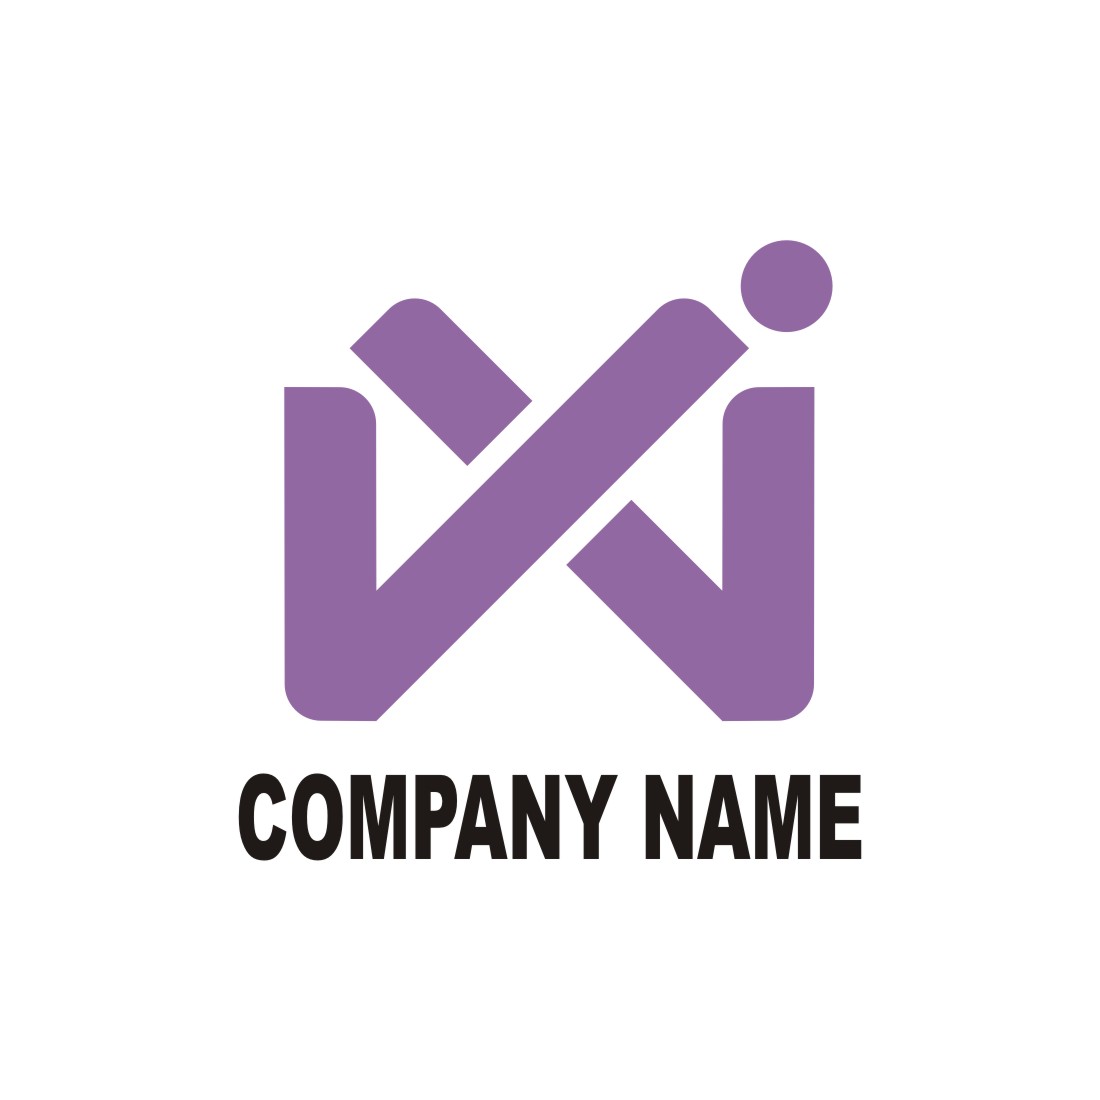 Professional VX monogram logo preview image.